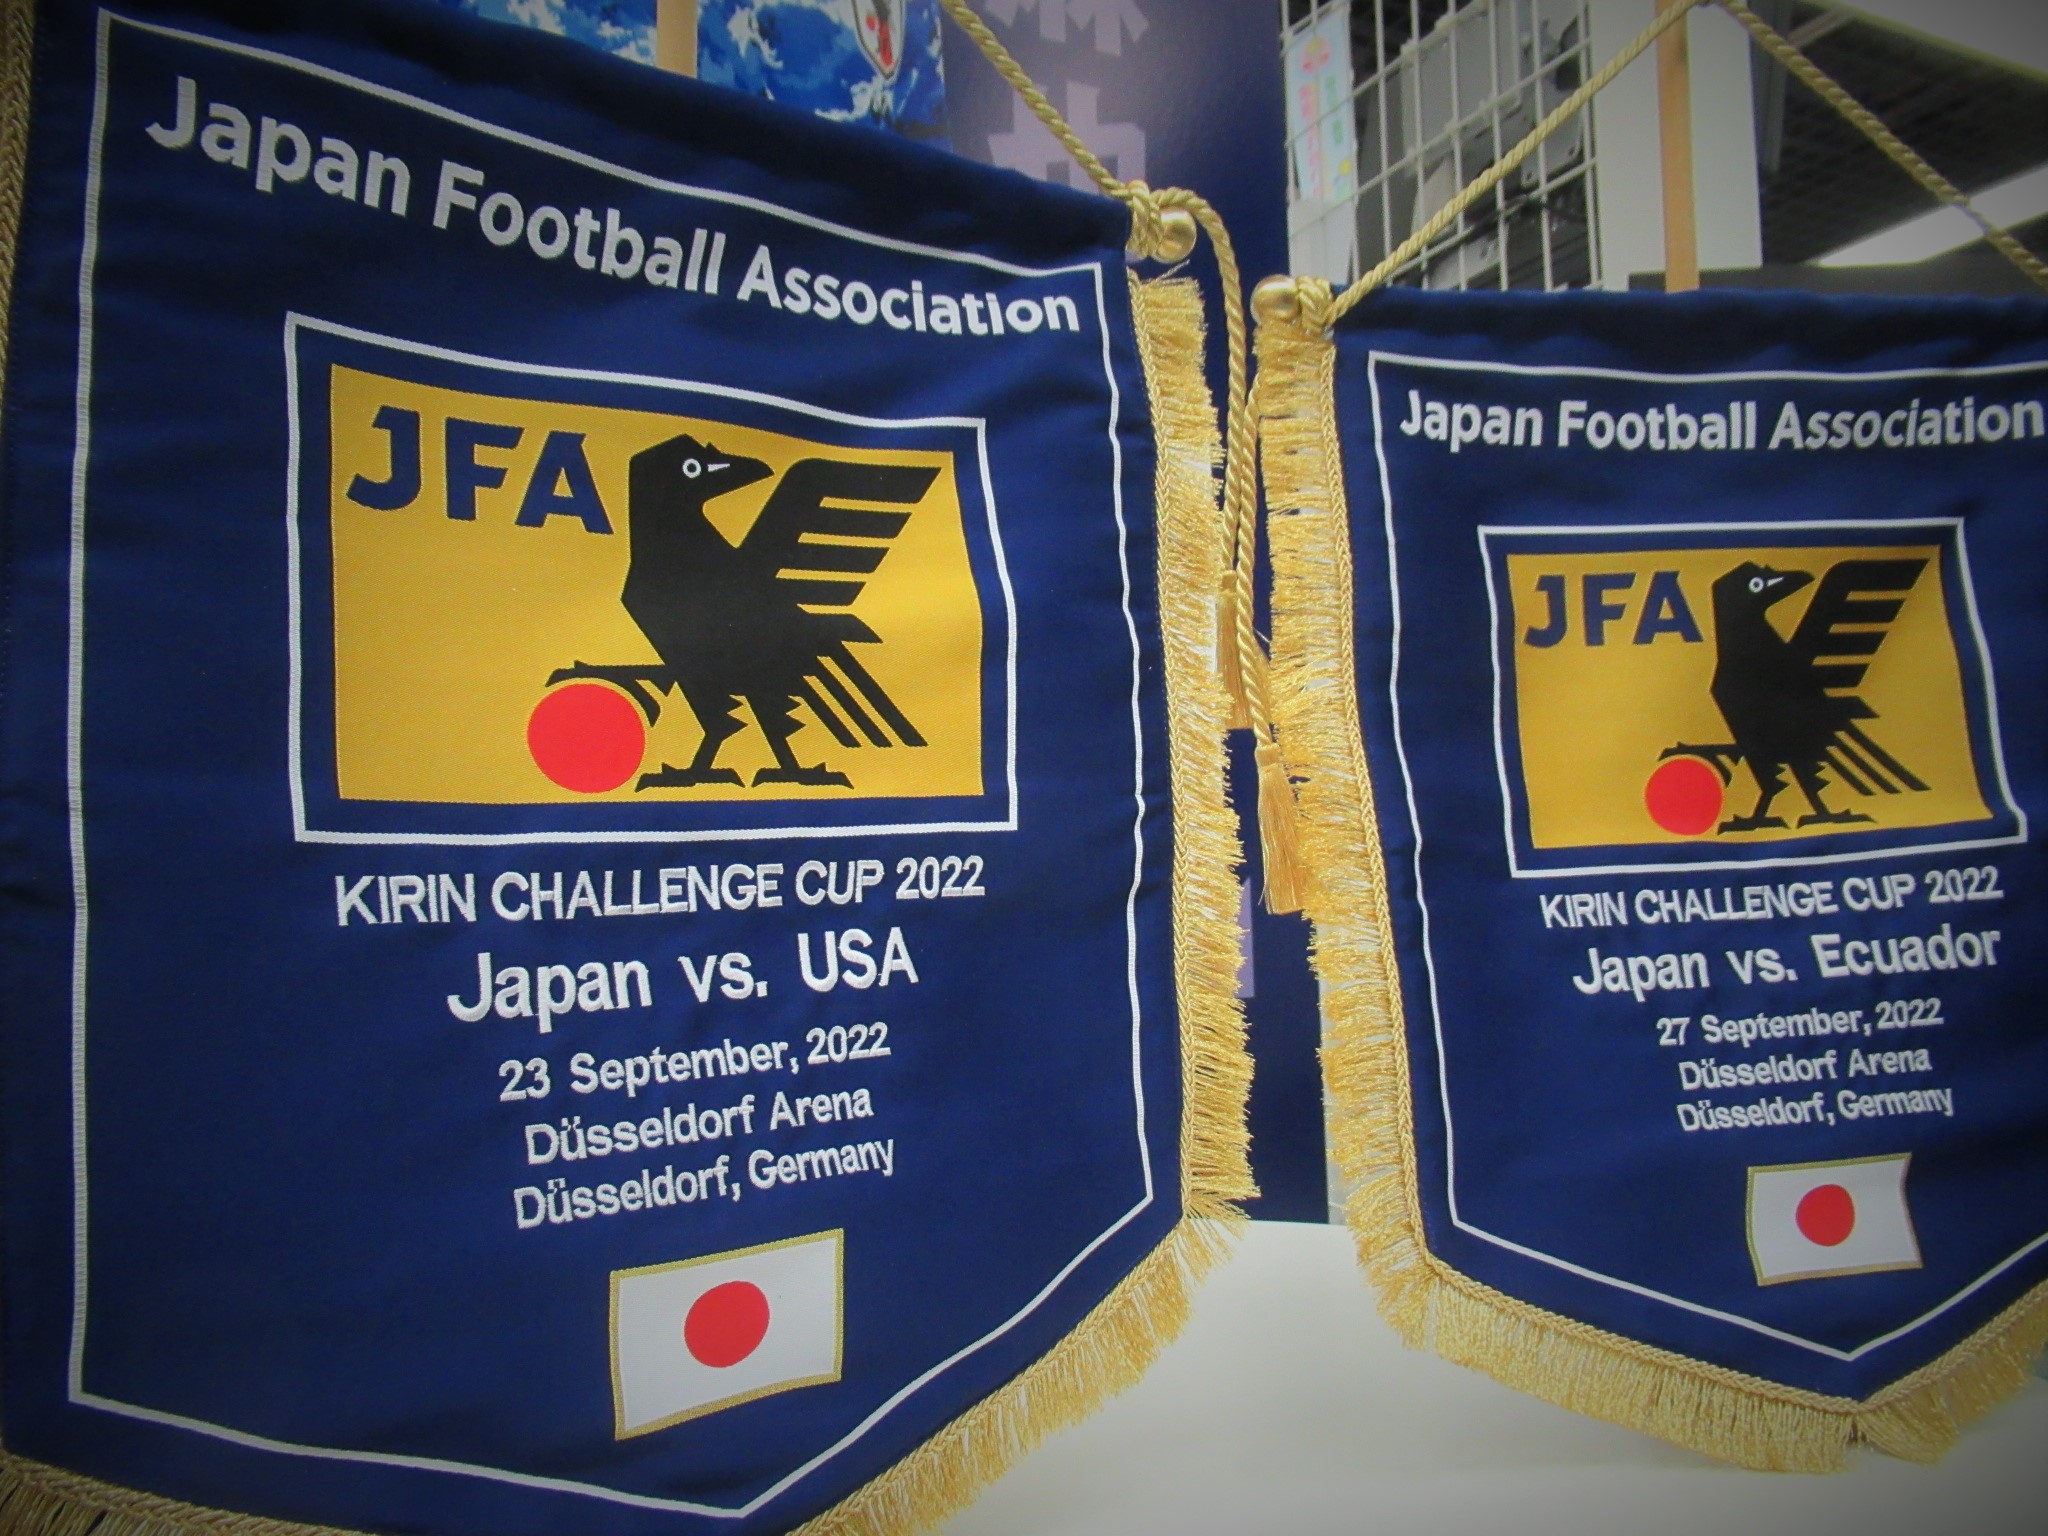 日本サッカーミュージアム Jfa Museum Twitter